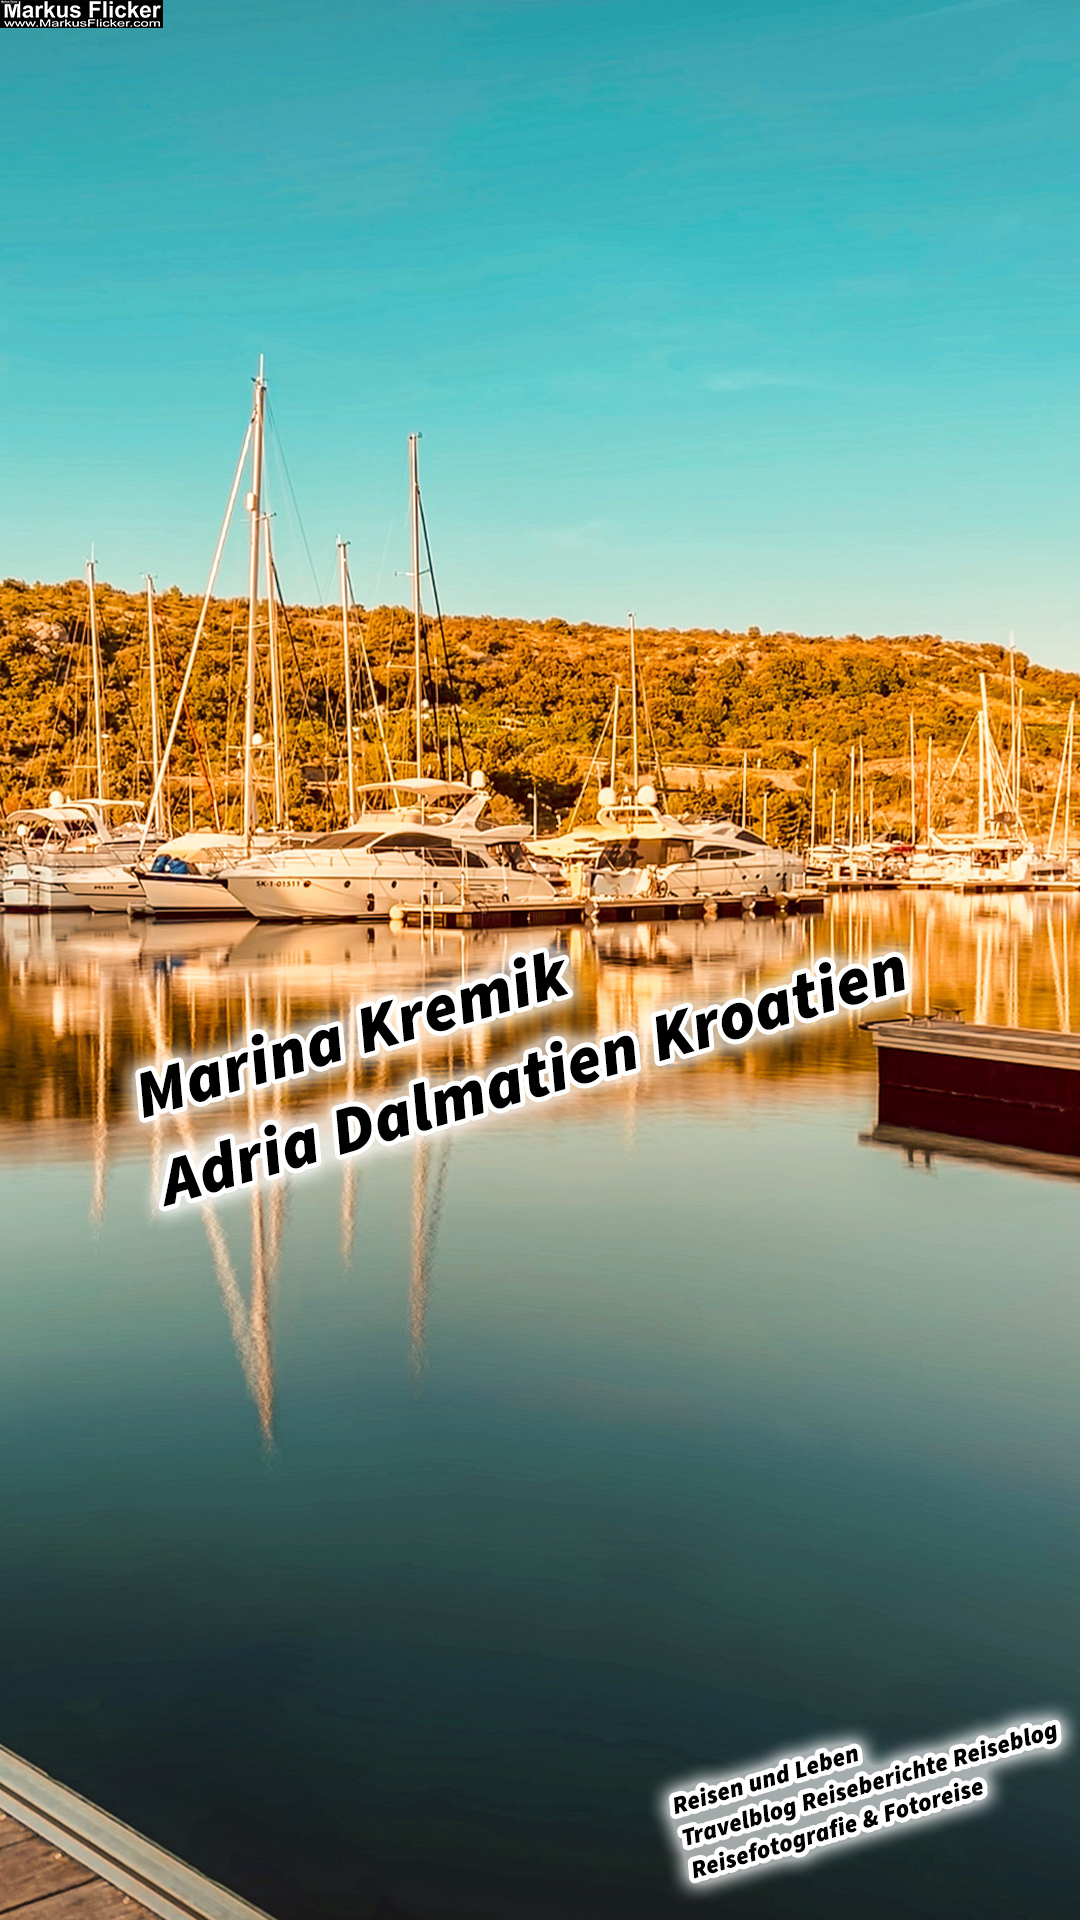 Marina Kremik Adria Dalmatien Kroatien #visitcroatia